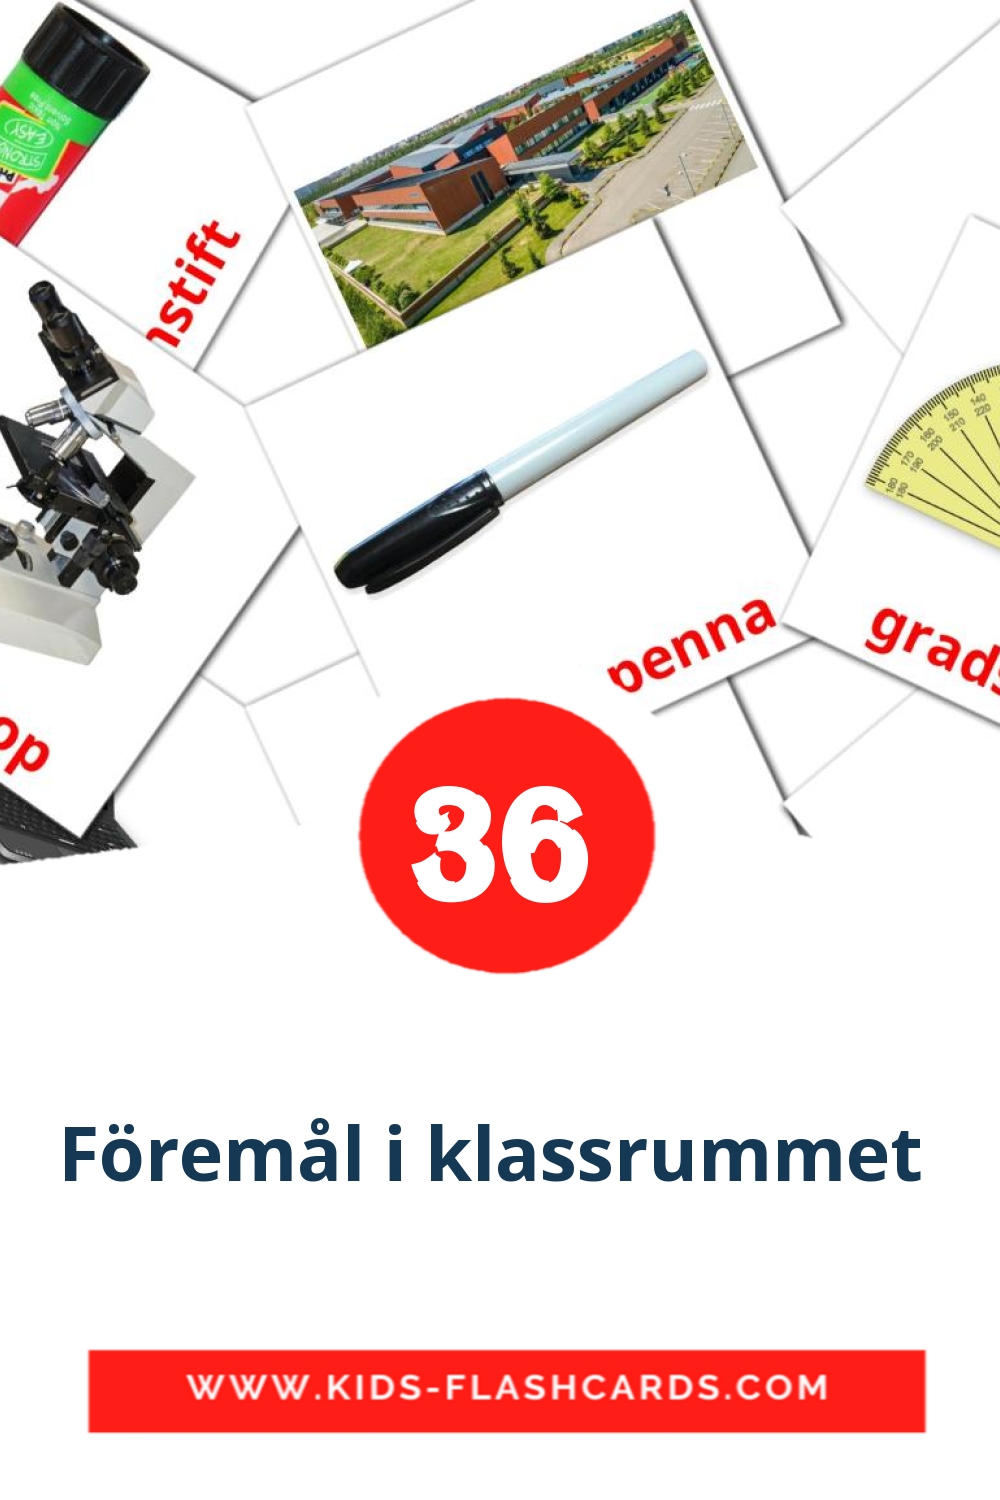 36 carte illustrate di Föremål i klassrummet  per la scuola materna in svedese